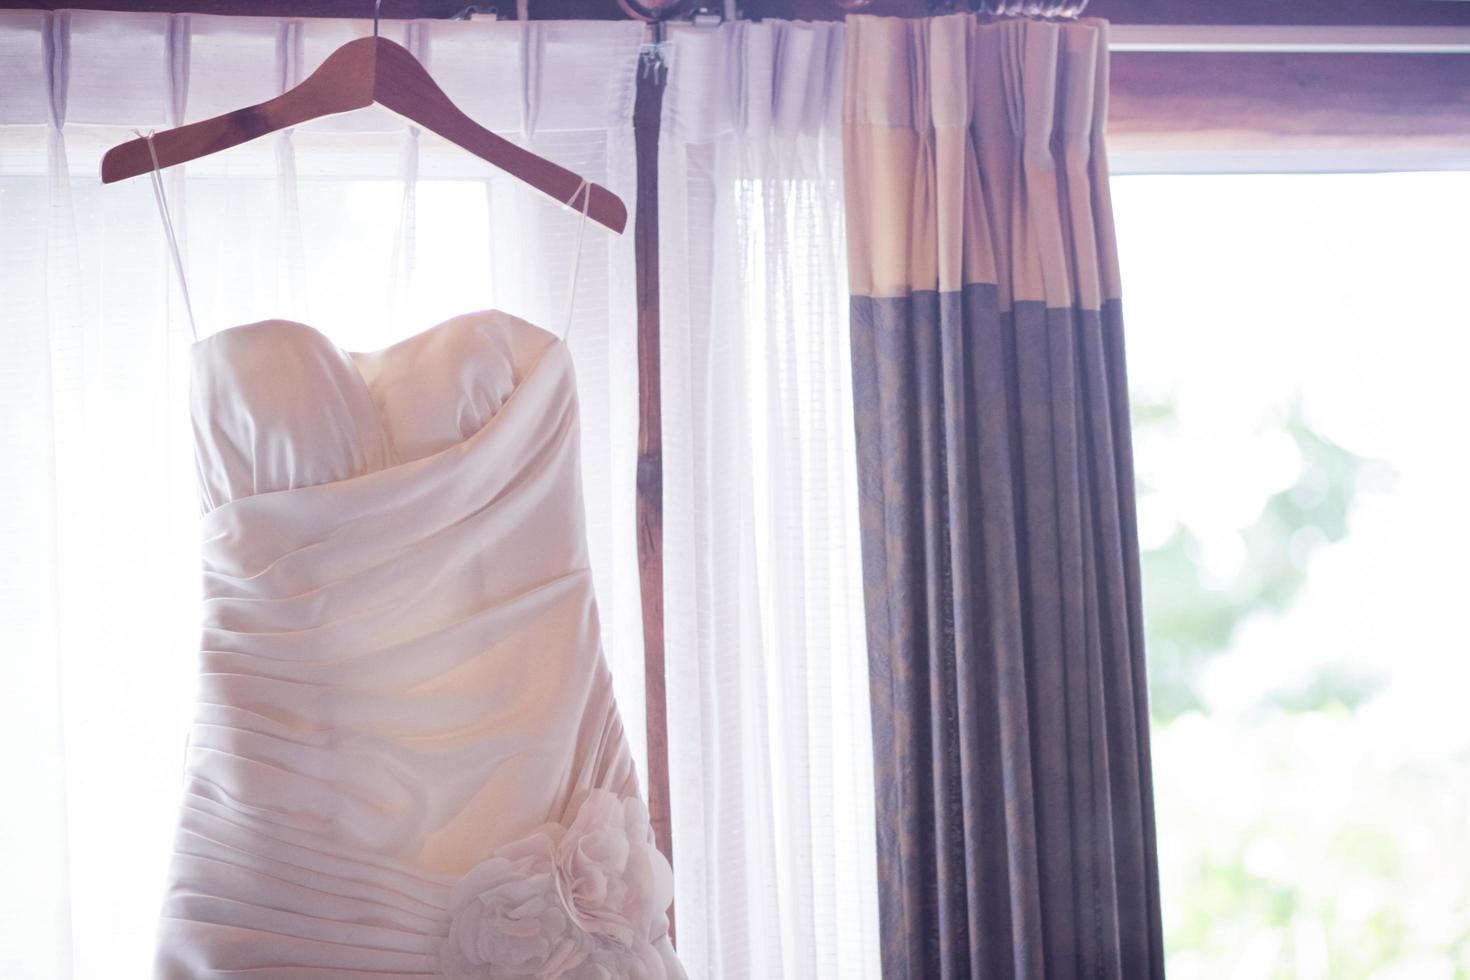 Hochzeit Kleid hängend auf Vorhang Schiene in der Nähe von Fenster im Zimmer foto